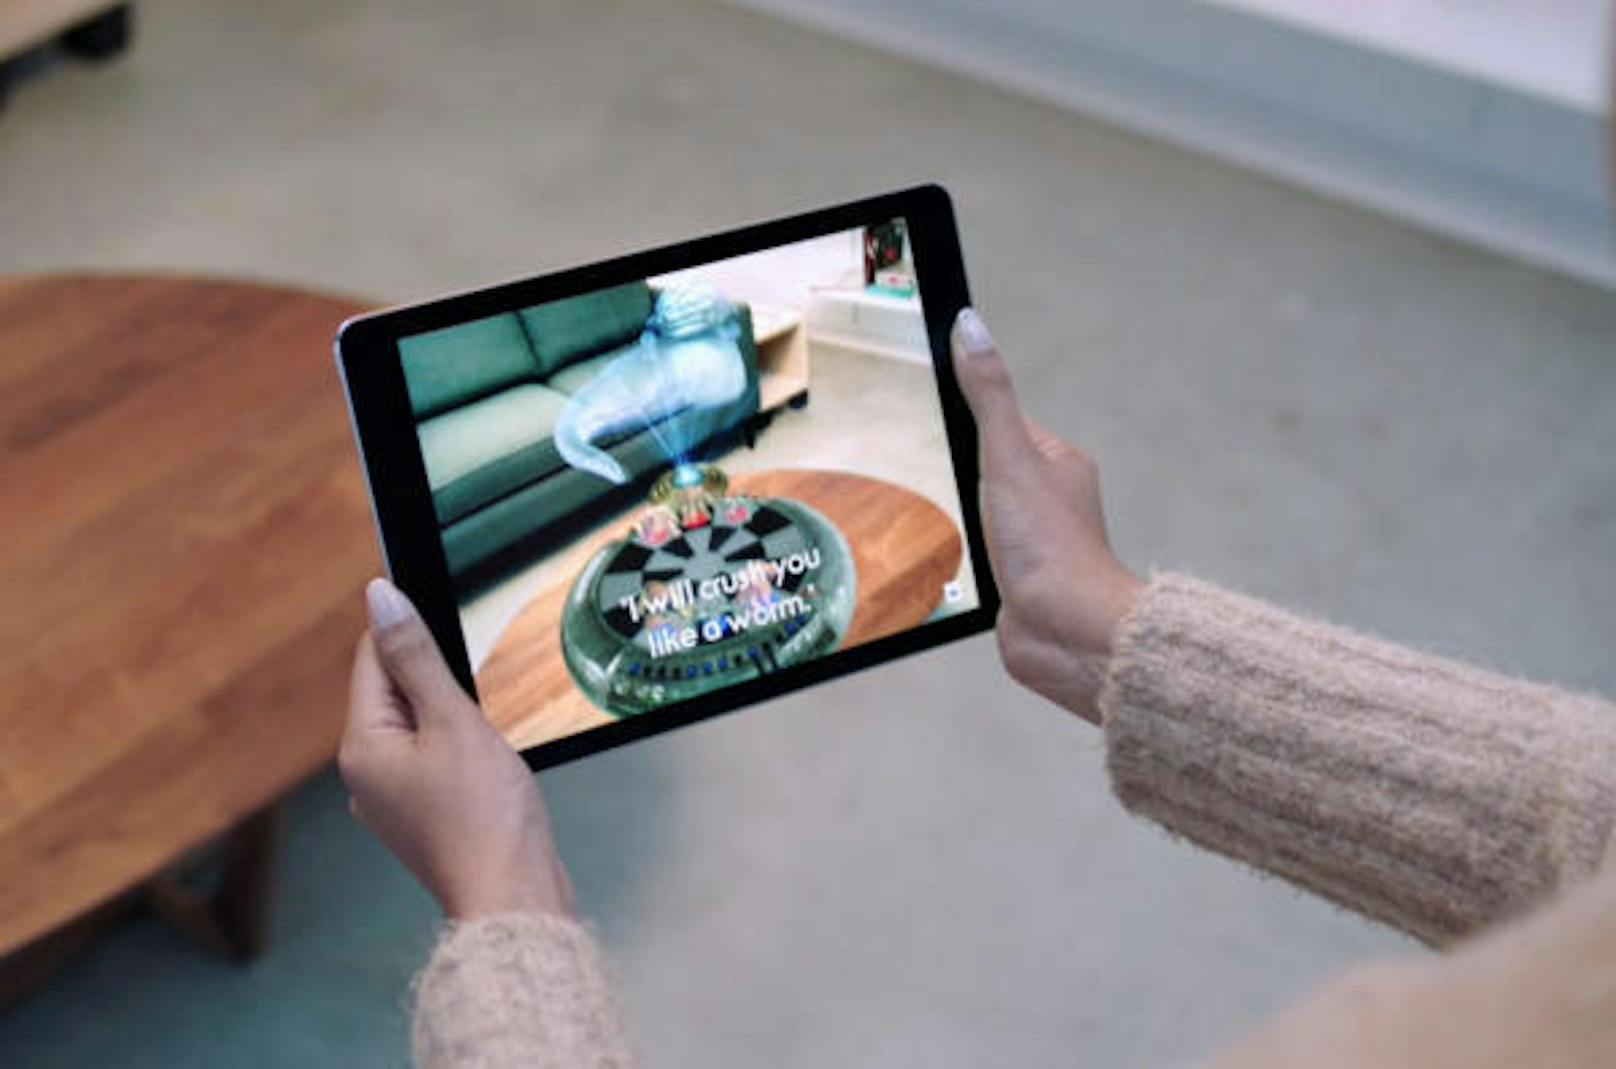 <b>Augmented Reality:</b> iOS 11 lässt die Realitäten verschmelzen. Mit dem sogenannten ARKit hat Apple den Entwicklern eine Umgebung für Augmented-Reality-Apps zur Verfügung gestellt. So lassen sich virtuelle Objekte im Raum positionieren. Das hat großes Potenzial. Neue Games, ein virtuelles Maßband auf dem iPhone? Alles kein Problem.